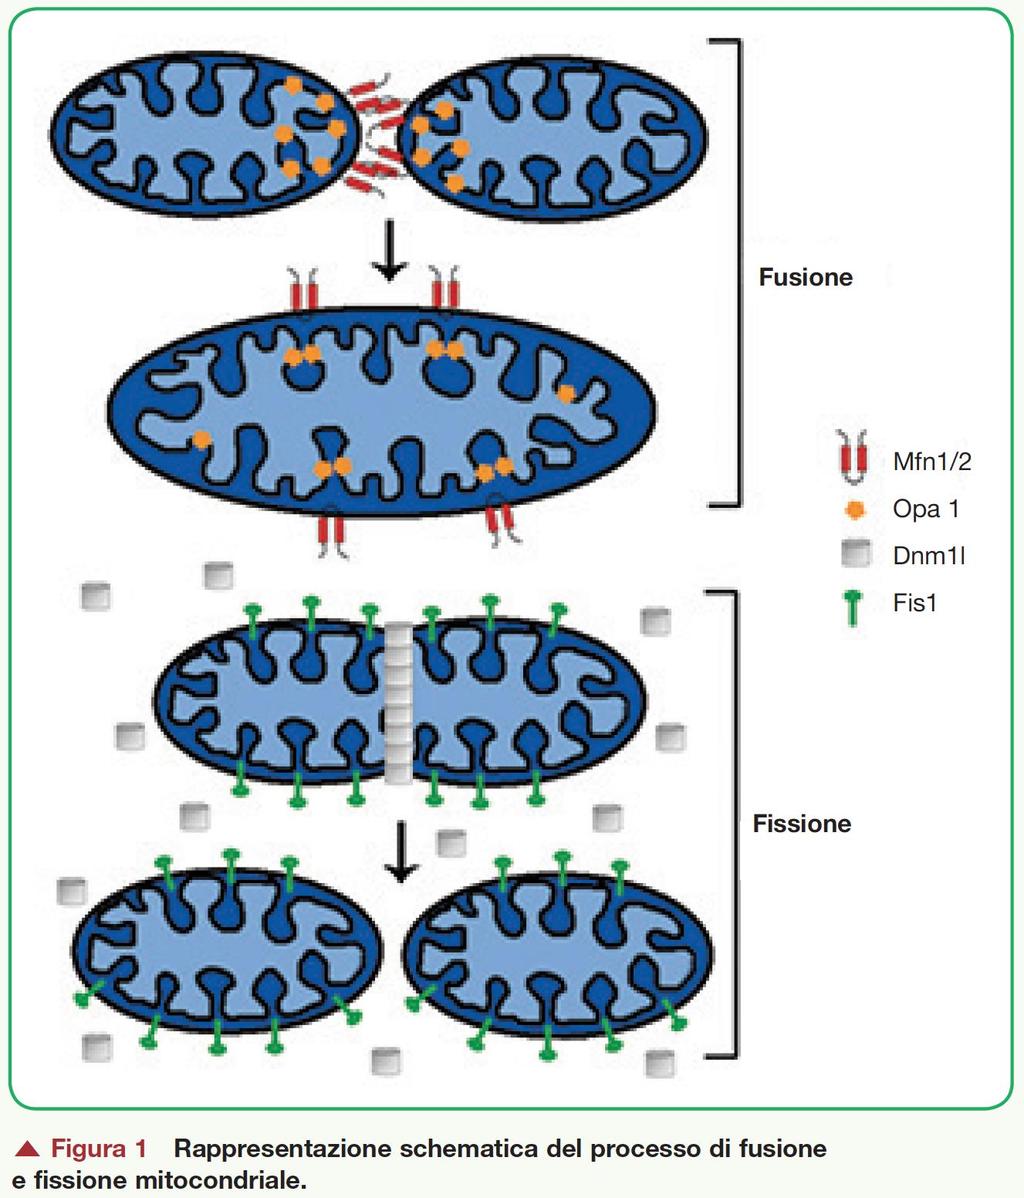 Fusione: Mitofusine (membrana esterna) OPA1 (Membrana interna)